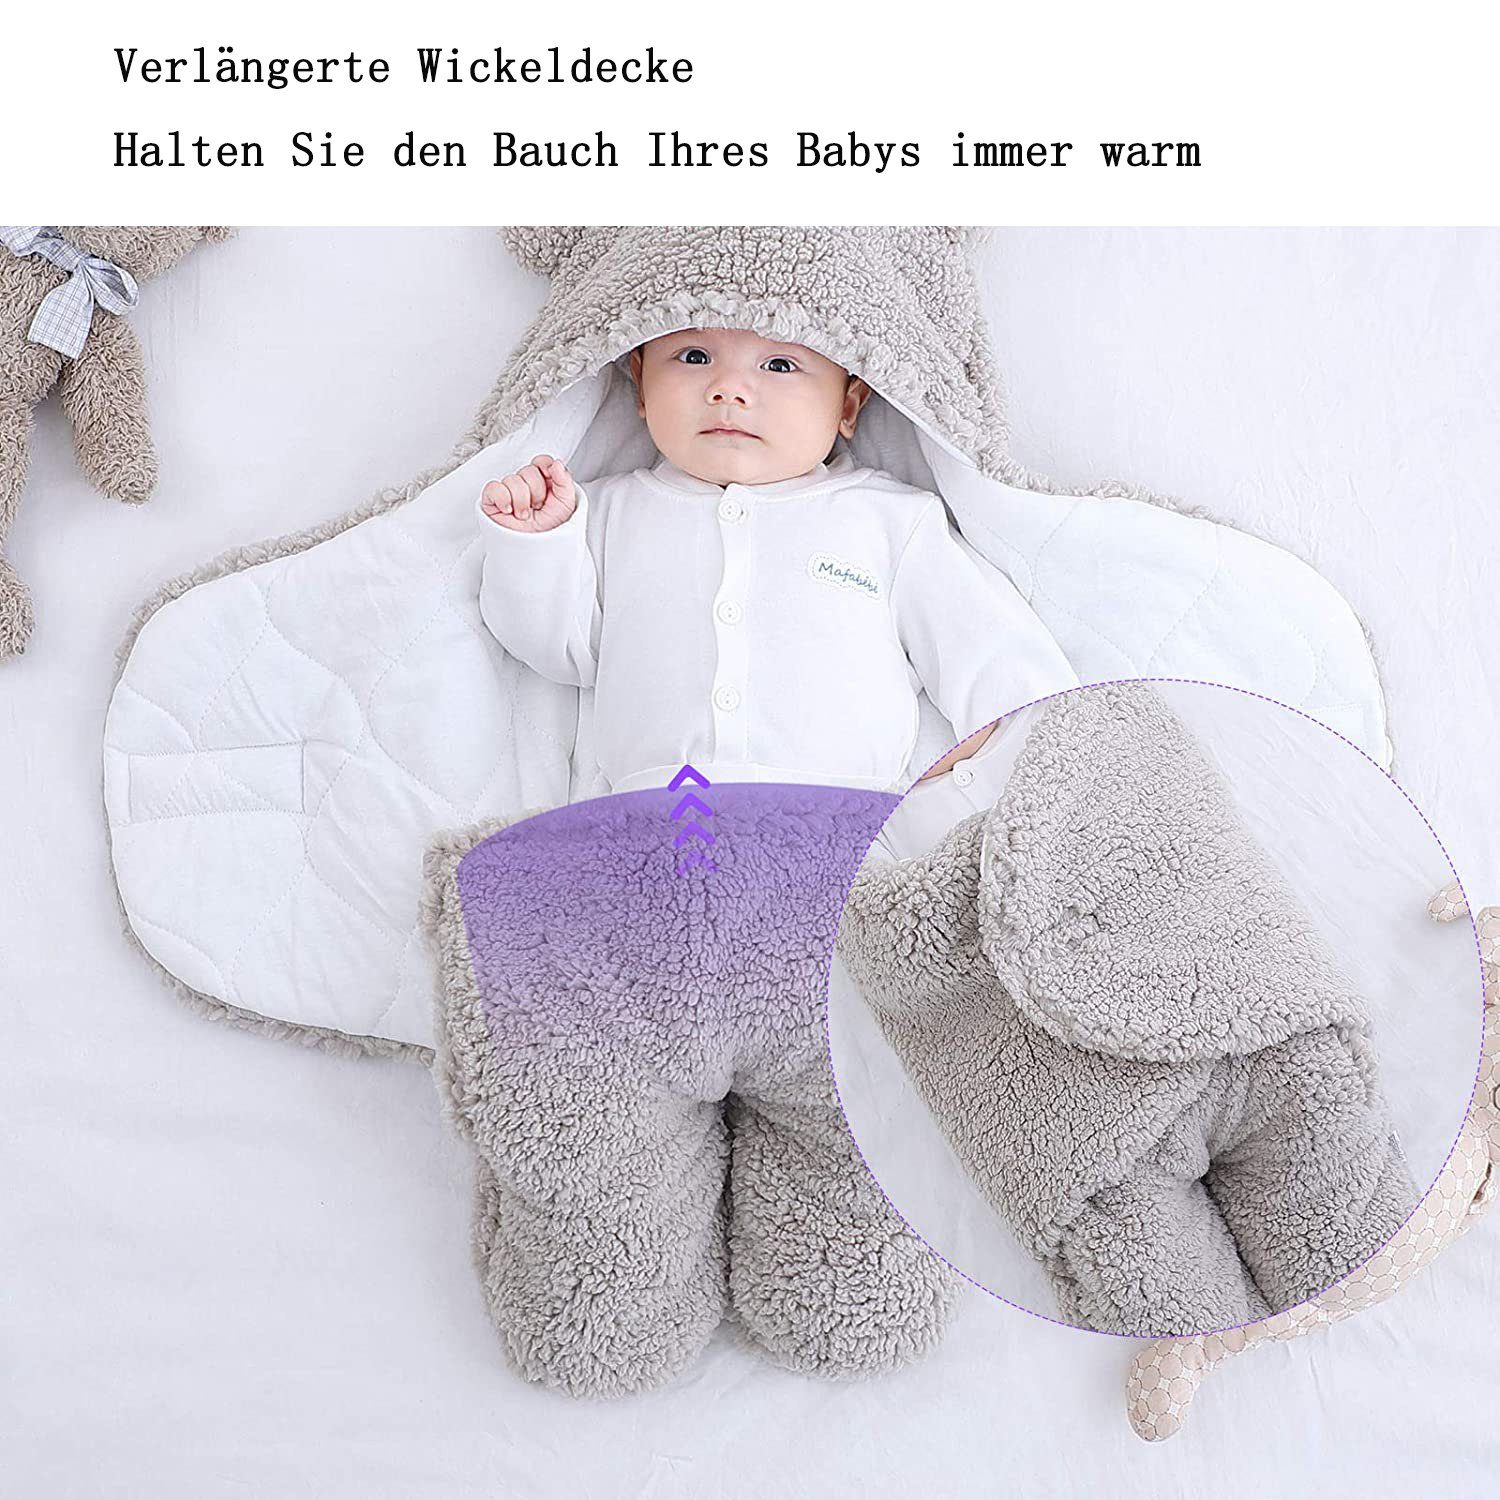 Wickeltuch, Baby-Kapuzen-Decke für grau Neugeborene, Schlafsack, GelldG Babydecke